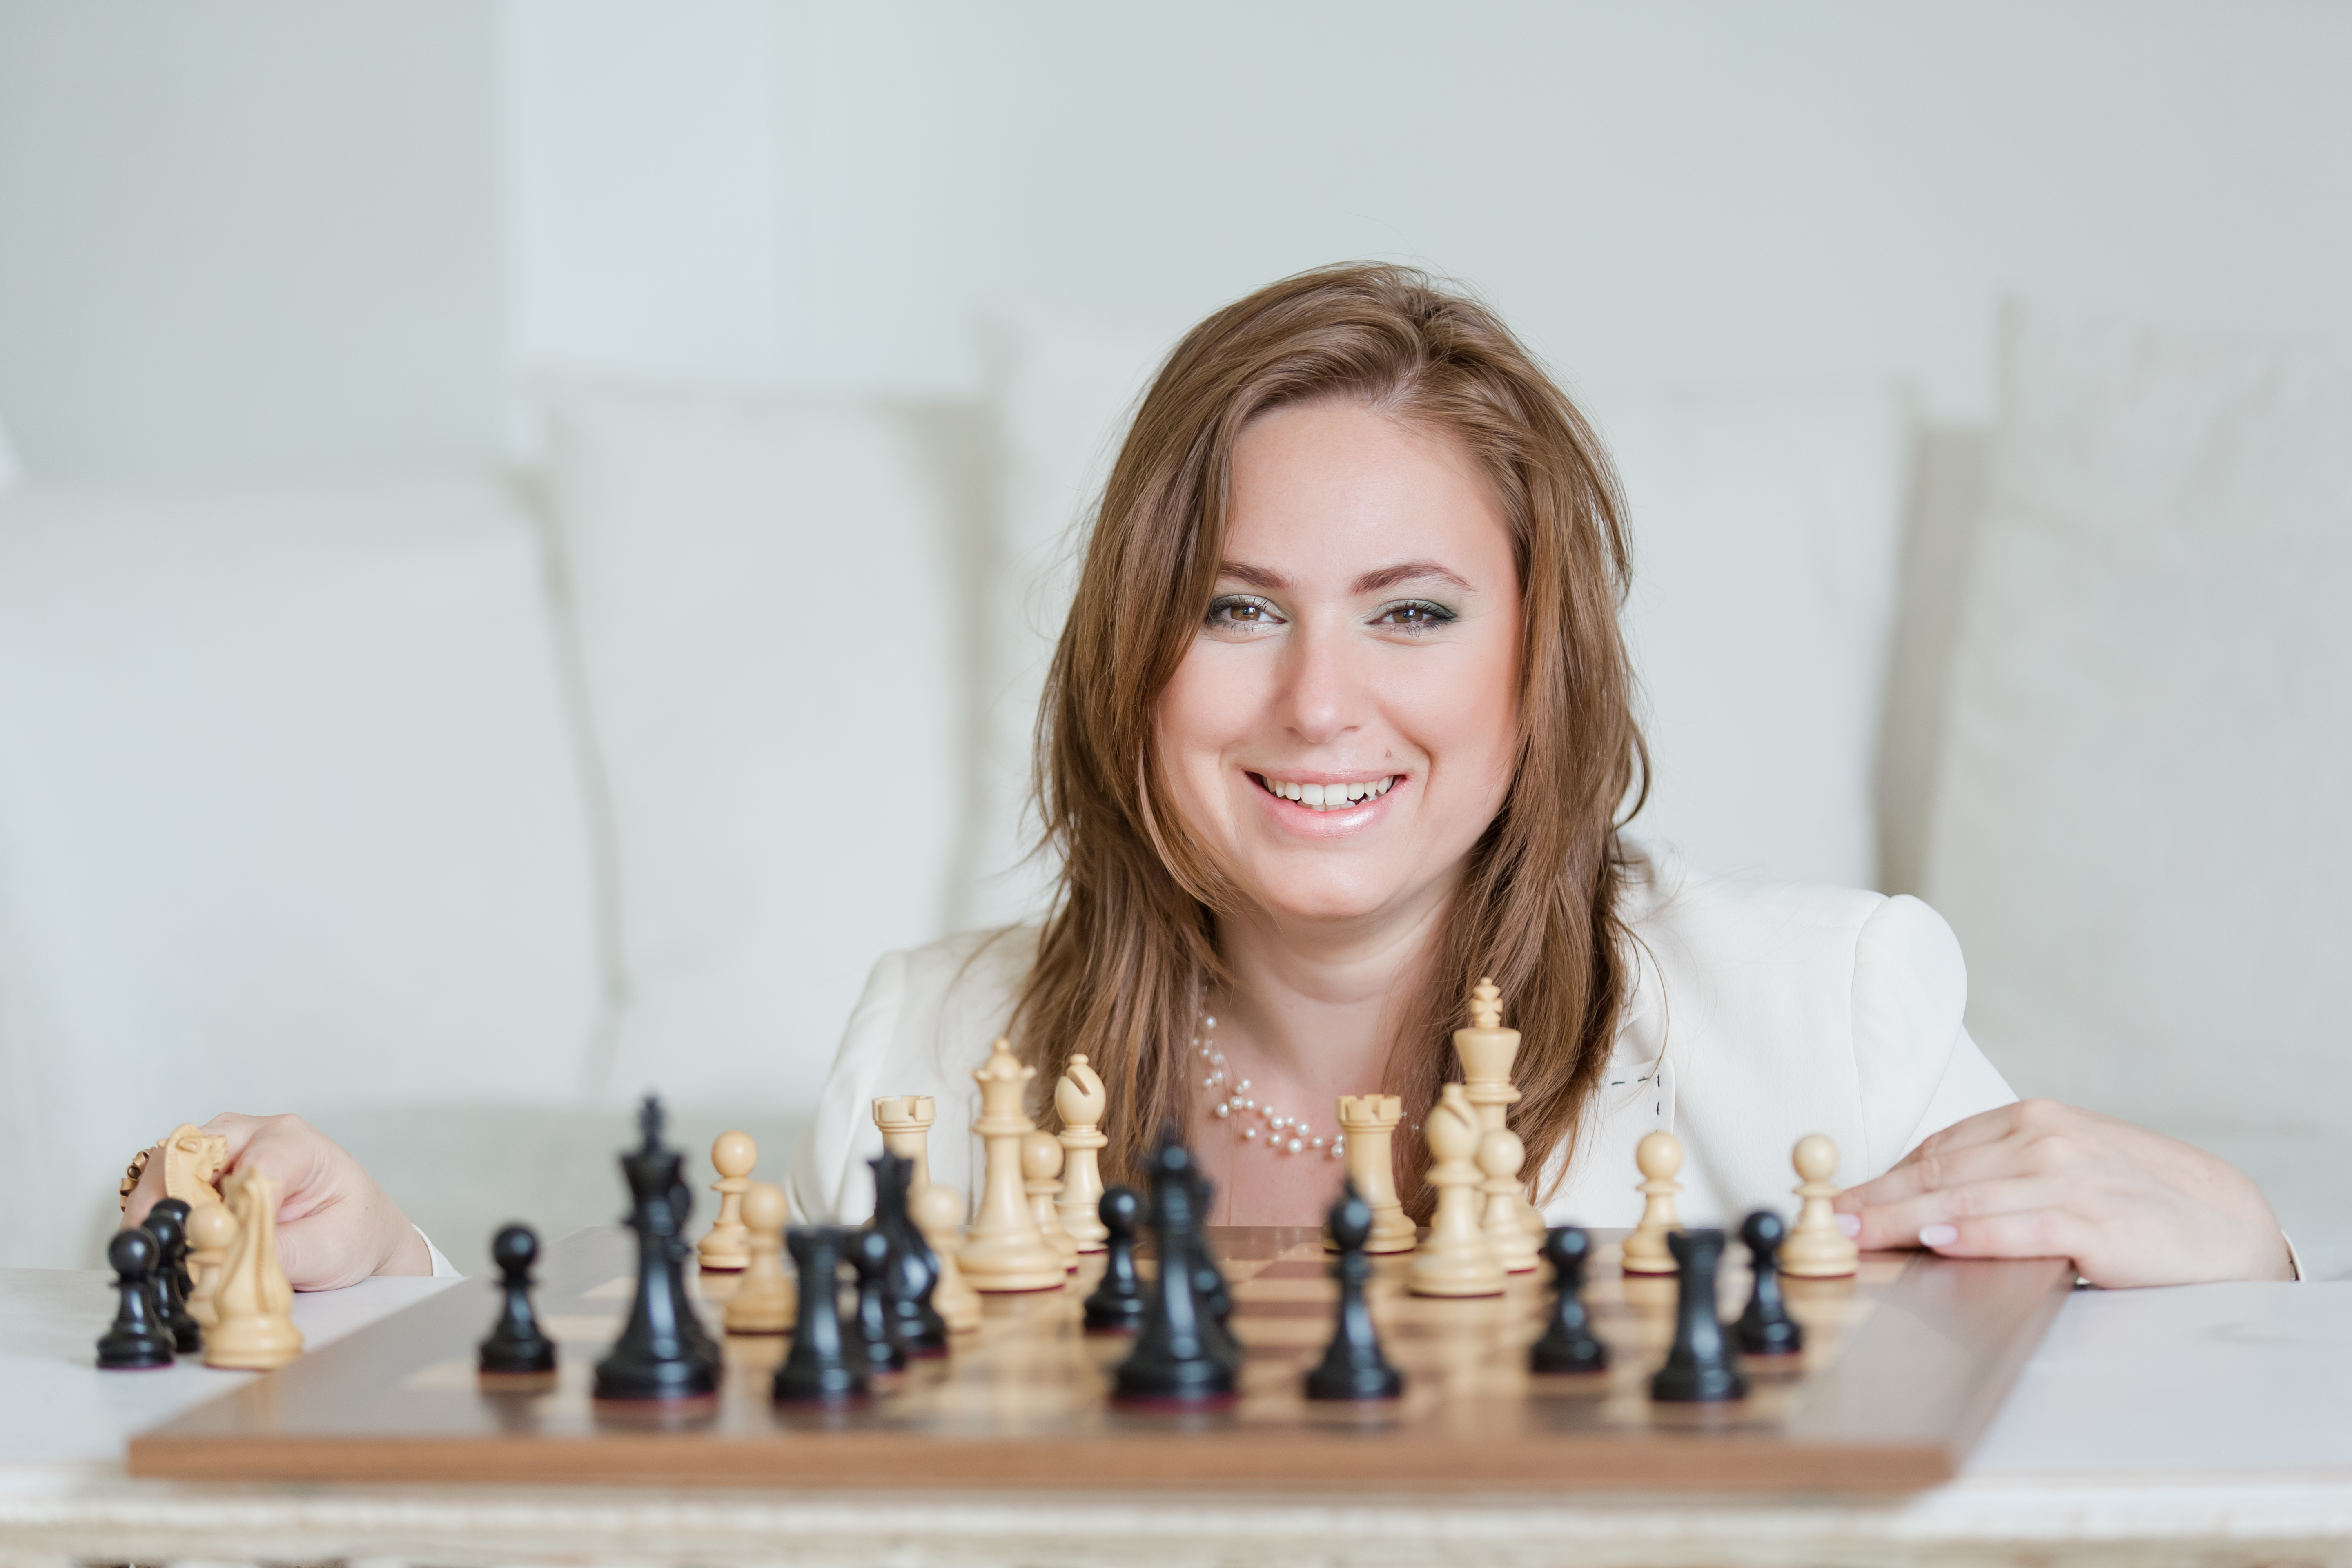 Judit Polgár is the woman who defeated Kasparov, Karpov and Spassky